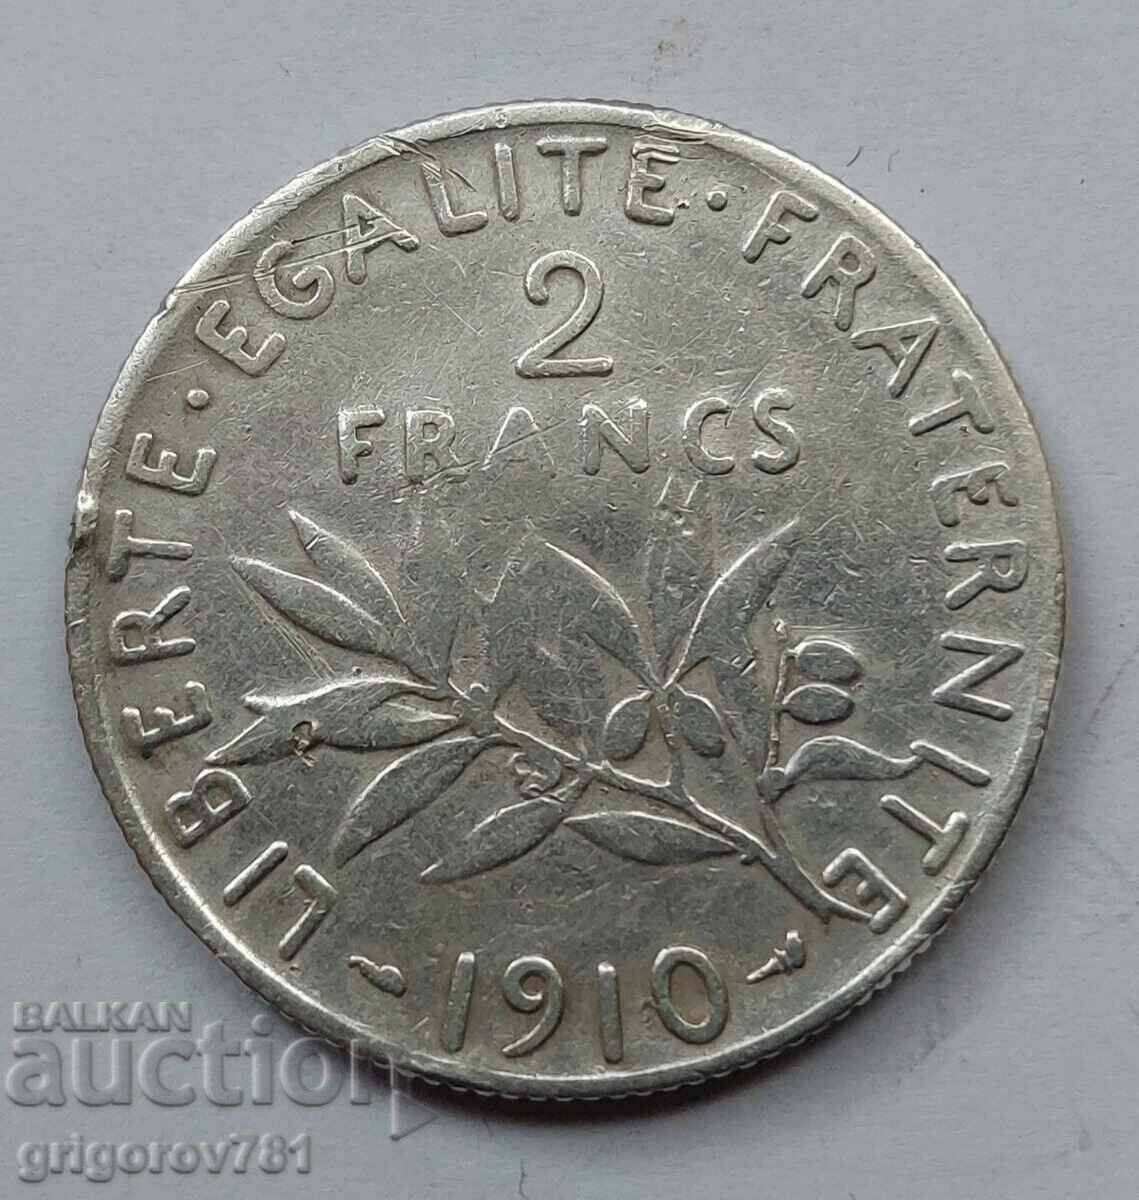 2 Franci Argint Franta 1910 - Moneda de argint #149